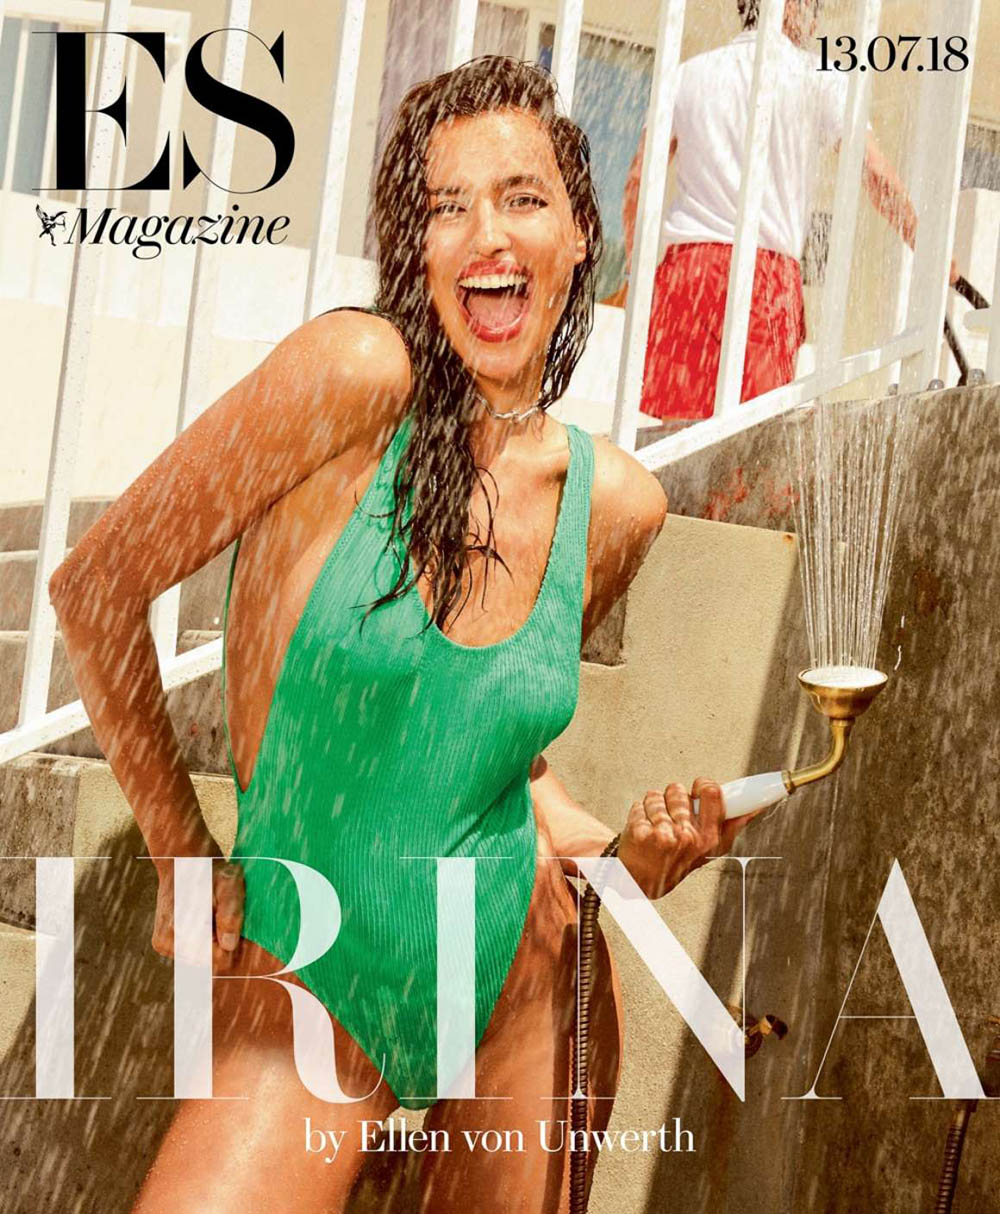 Irina Shayk covers ES Magazine July 13th, 2018 by Ellen von Unwerth